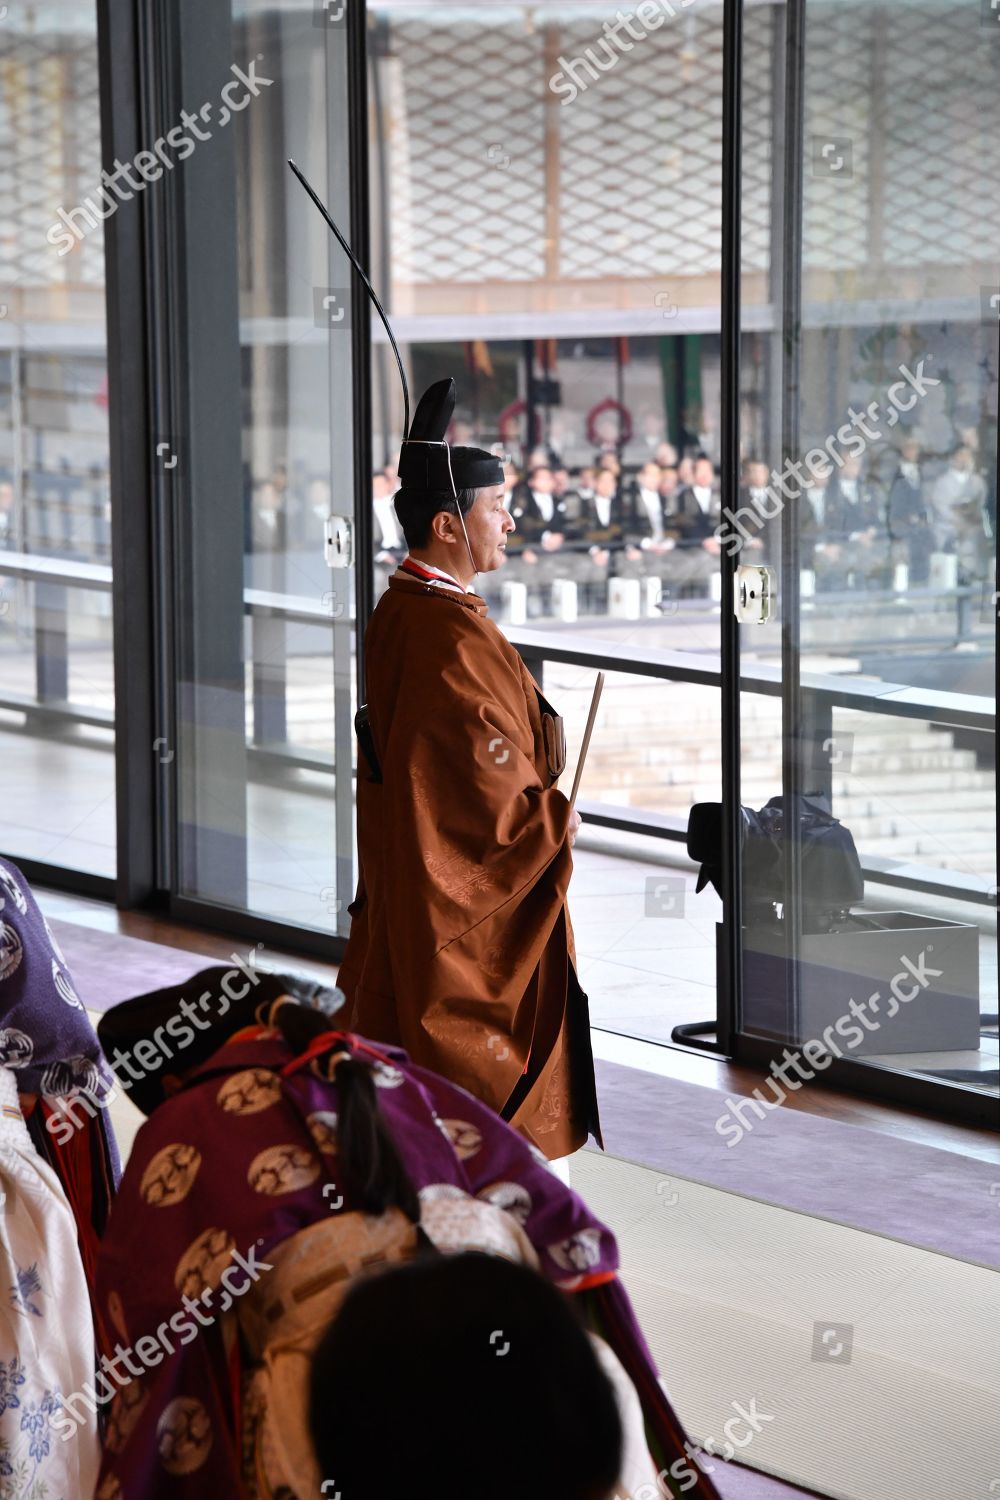 enthronement-ceremony-of-emperor-naruhito-tokyo-japan-shutterstock-editorial-10452563av.jpg